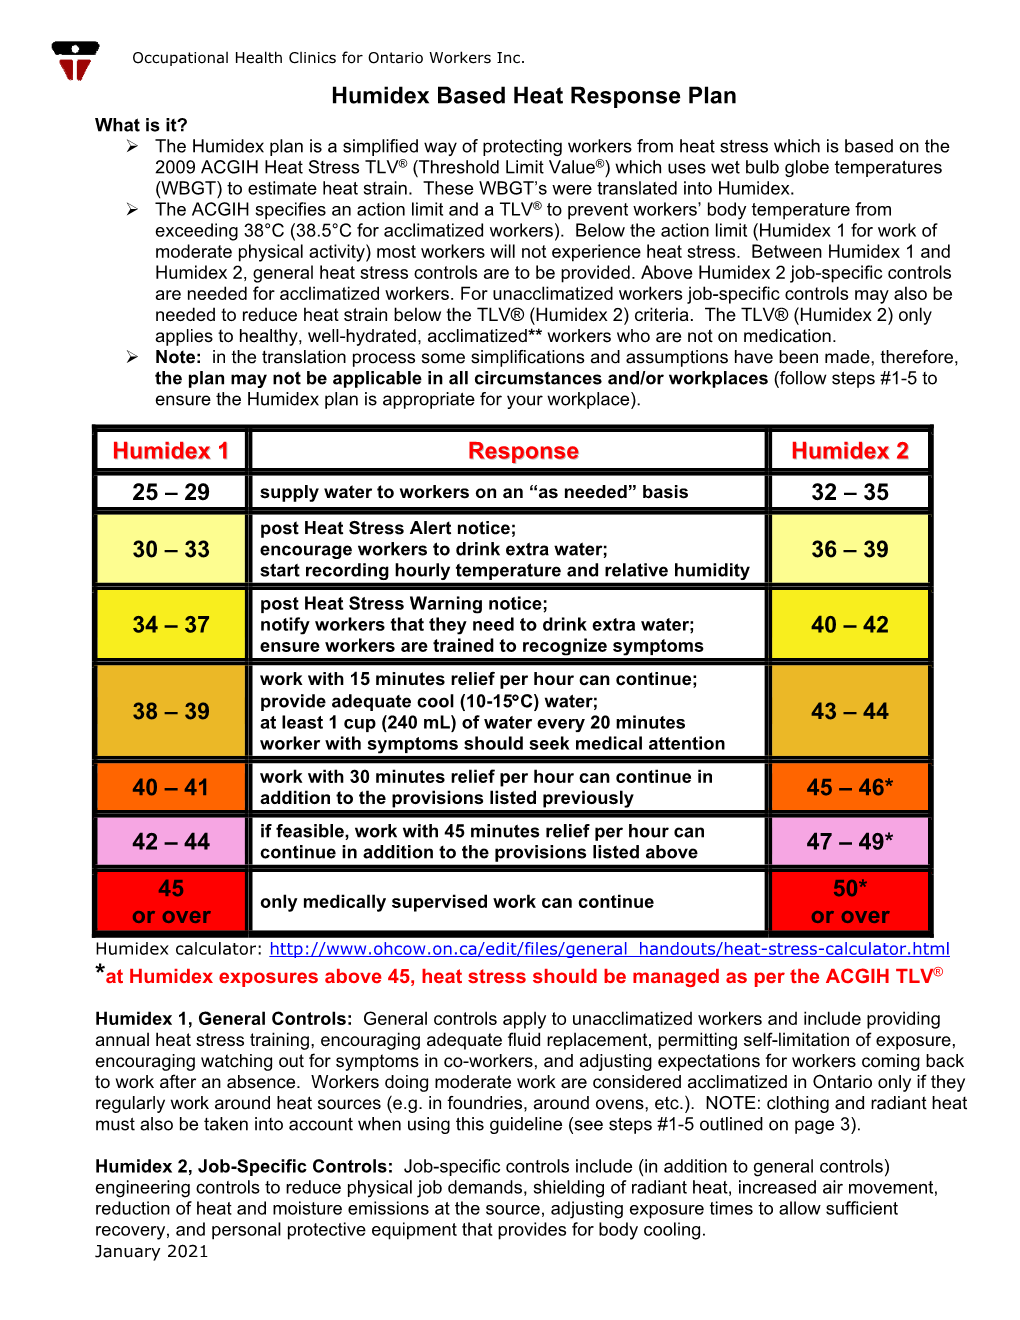 Humidex Based Heat Response Plan